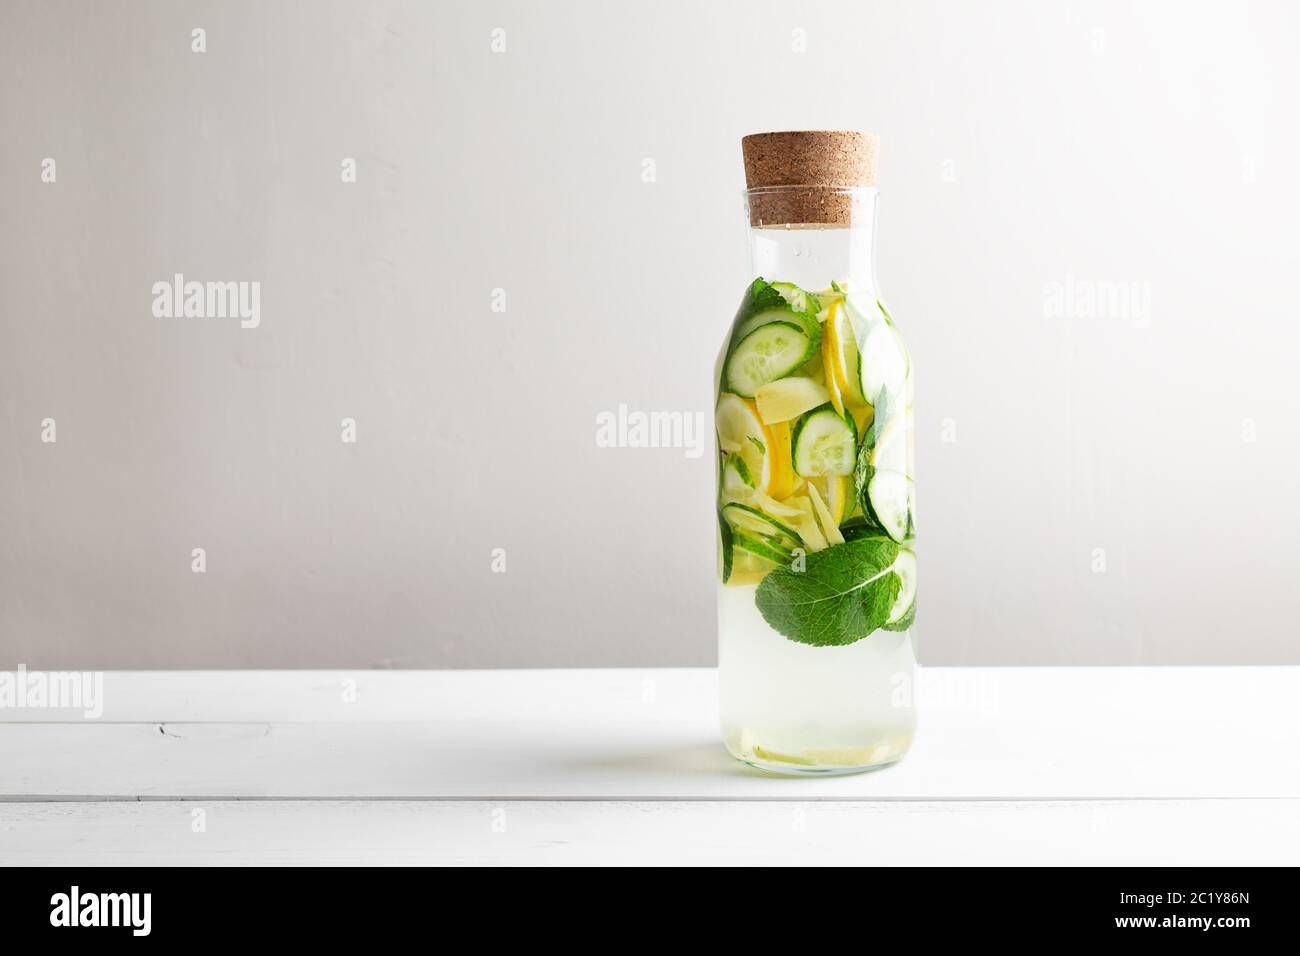 Sassy diet water. Cucumber, lemon, mint lemonade in glasses on white wooden table. Stock Photo